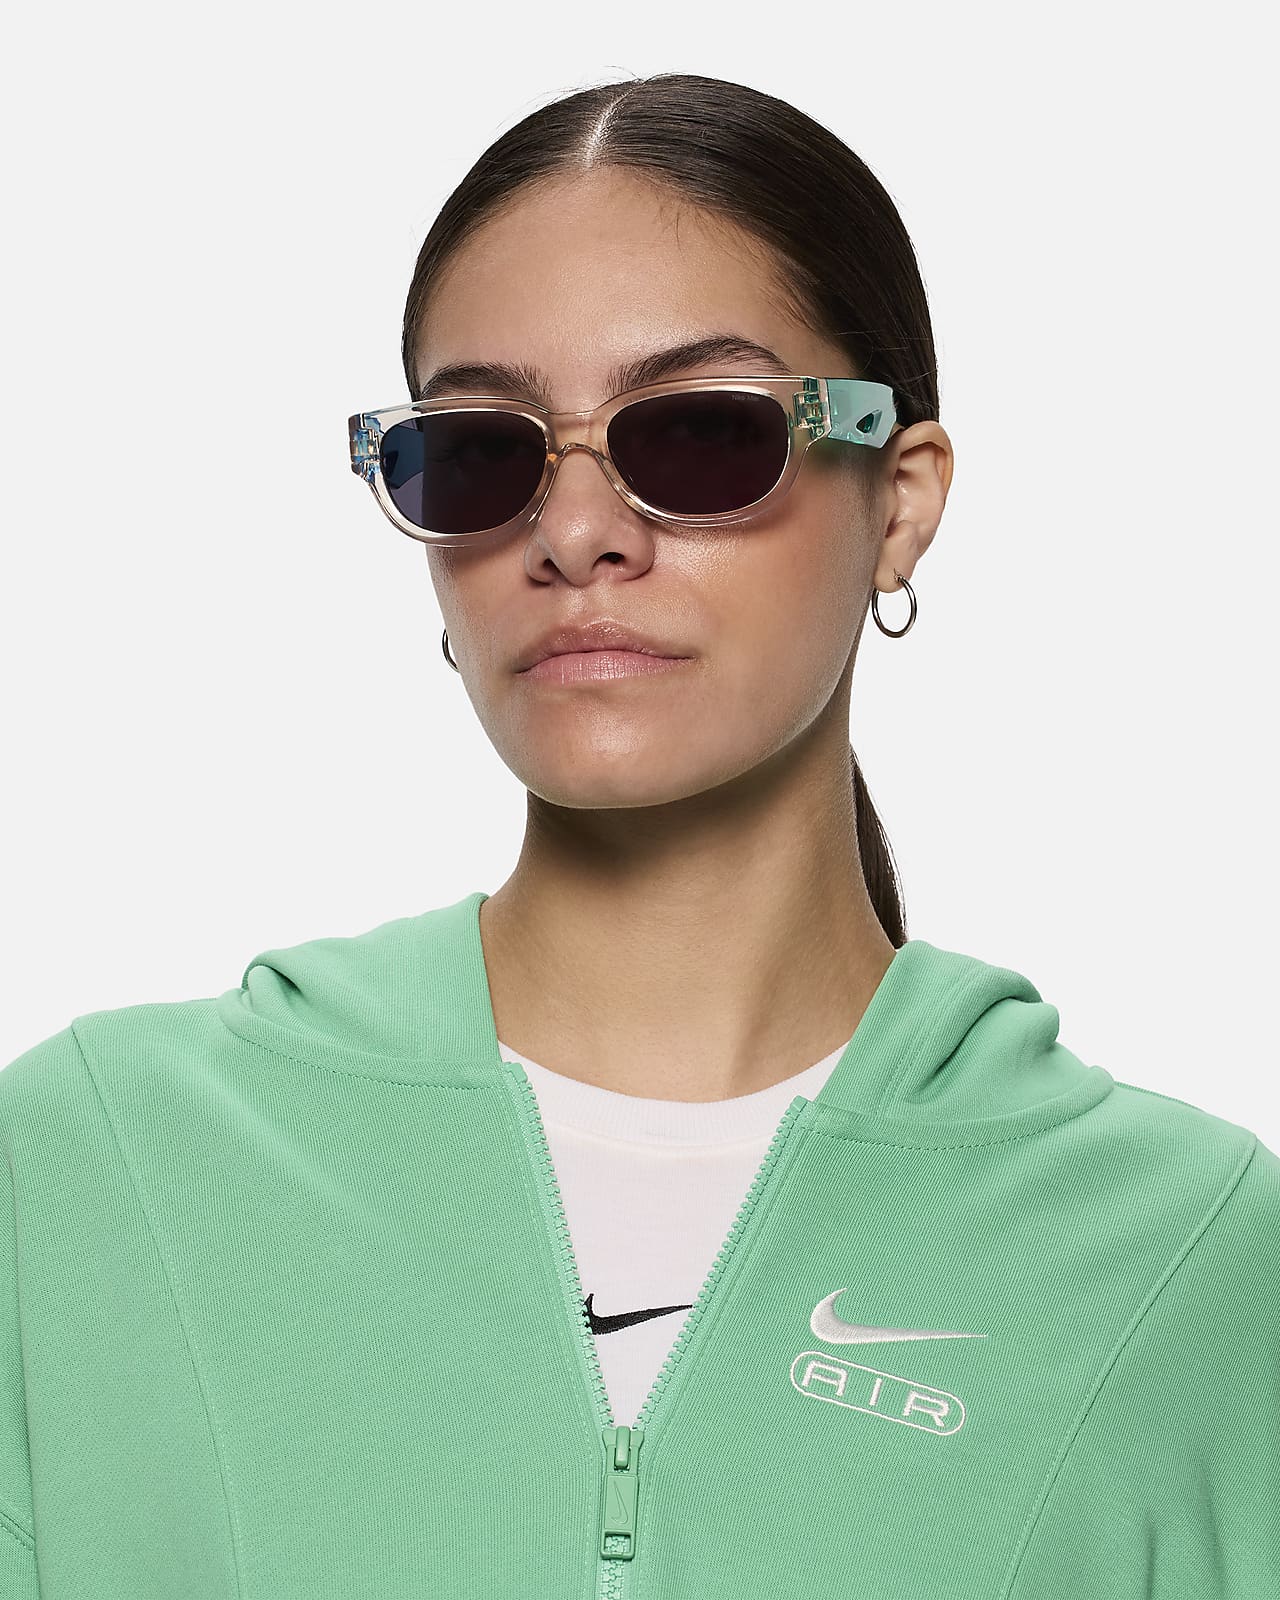 Nike Variant II Sunglasses